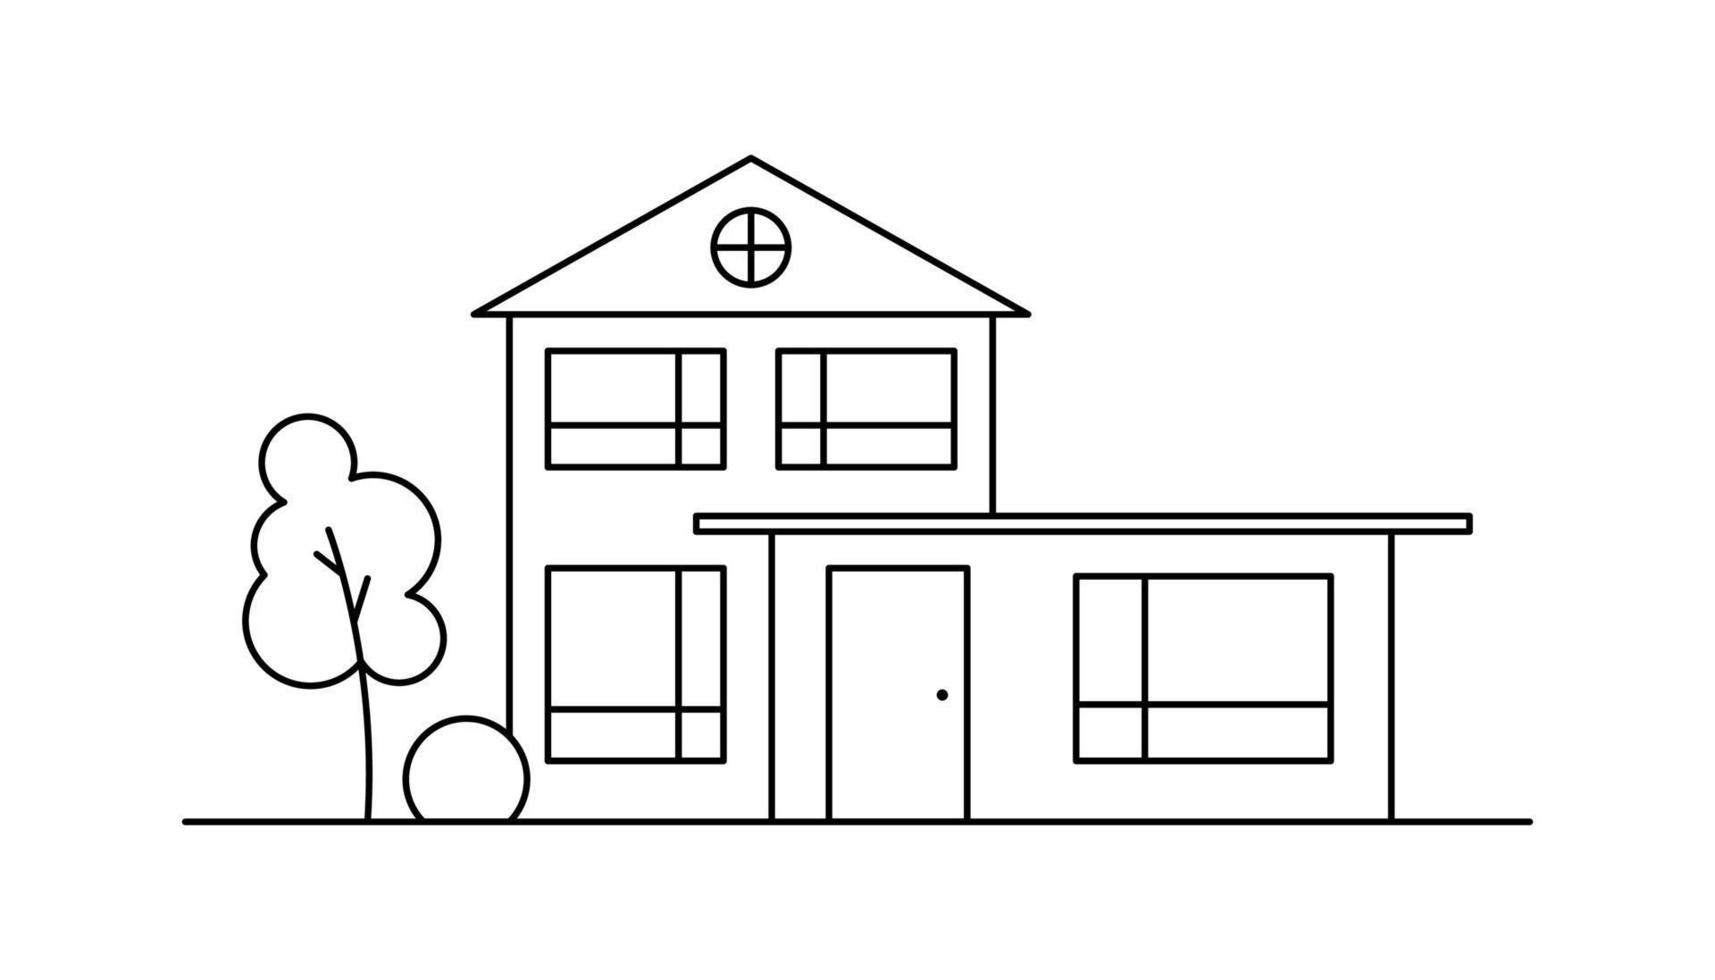 linje konst vektor grannskap illustration med ett hus och en träd.